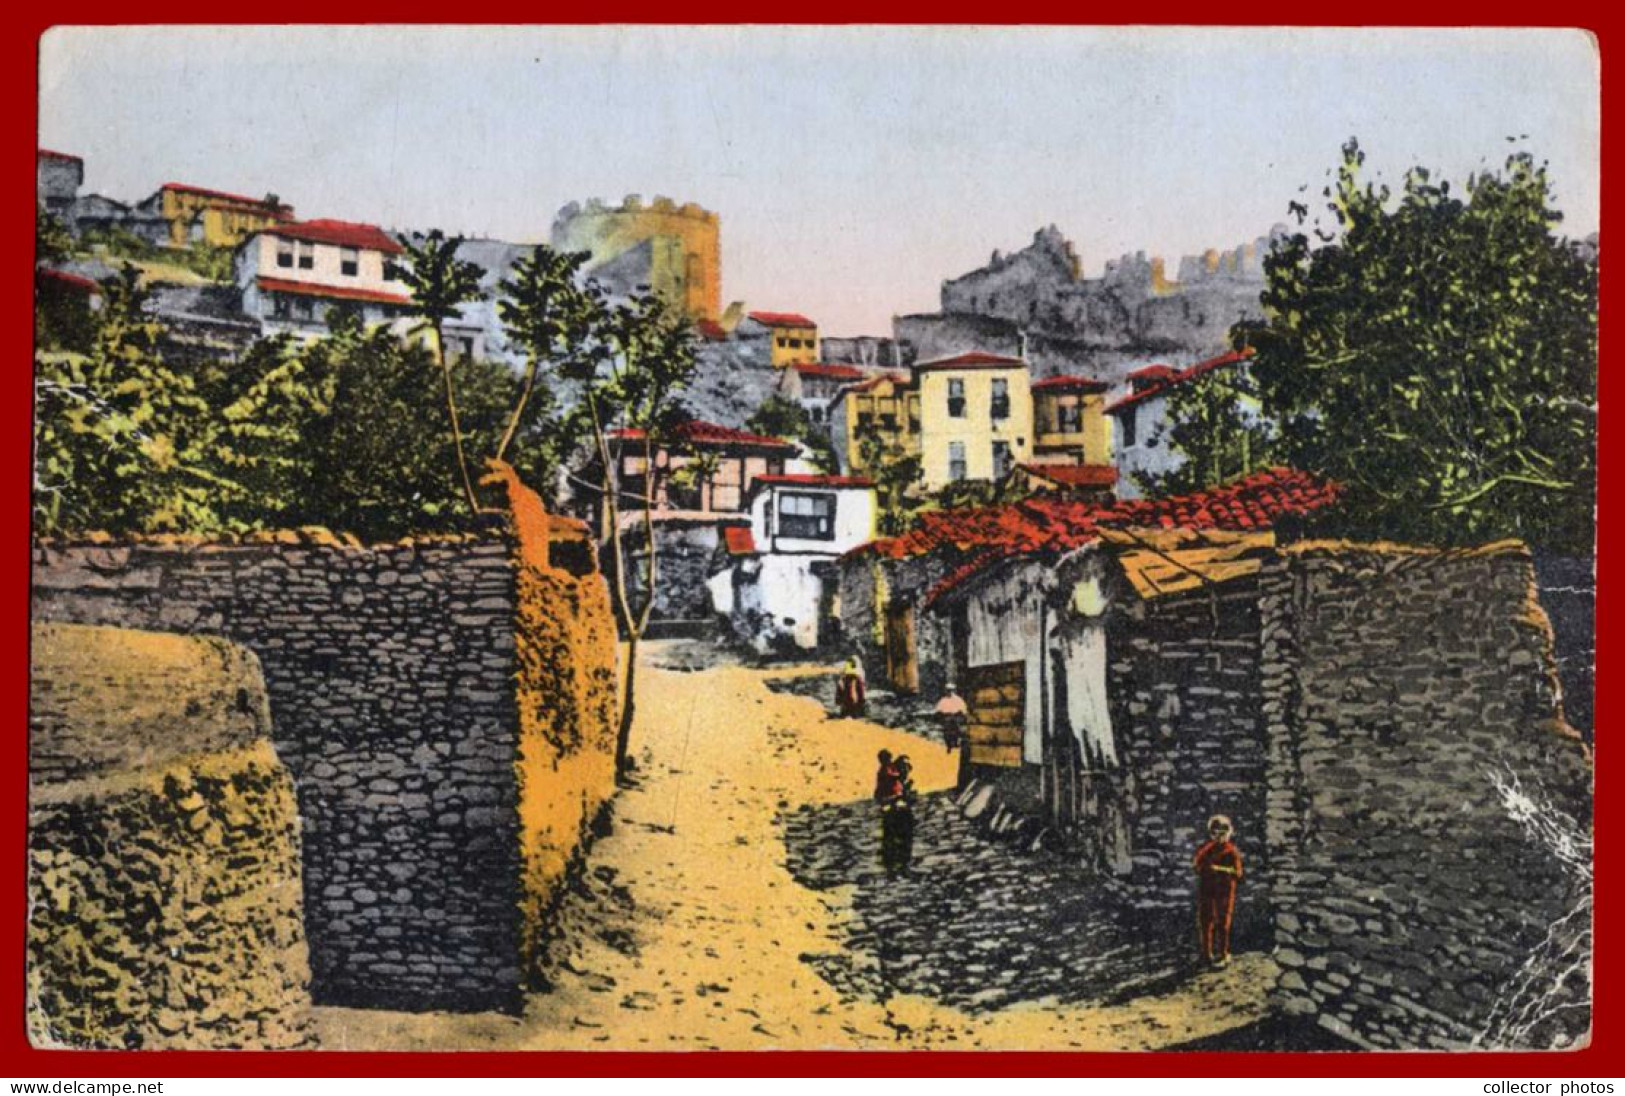 THESSALONIKI Salonica Greece 1910s (circa WWI). Lot of 10 vintage used postcards [de135]